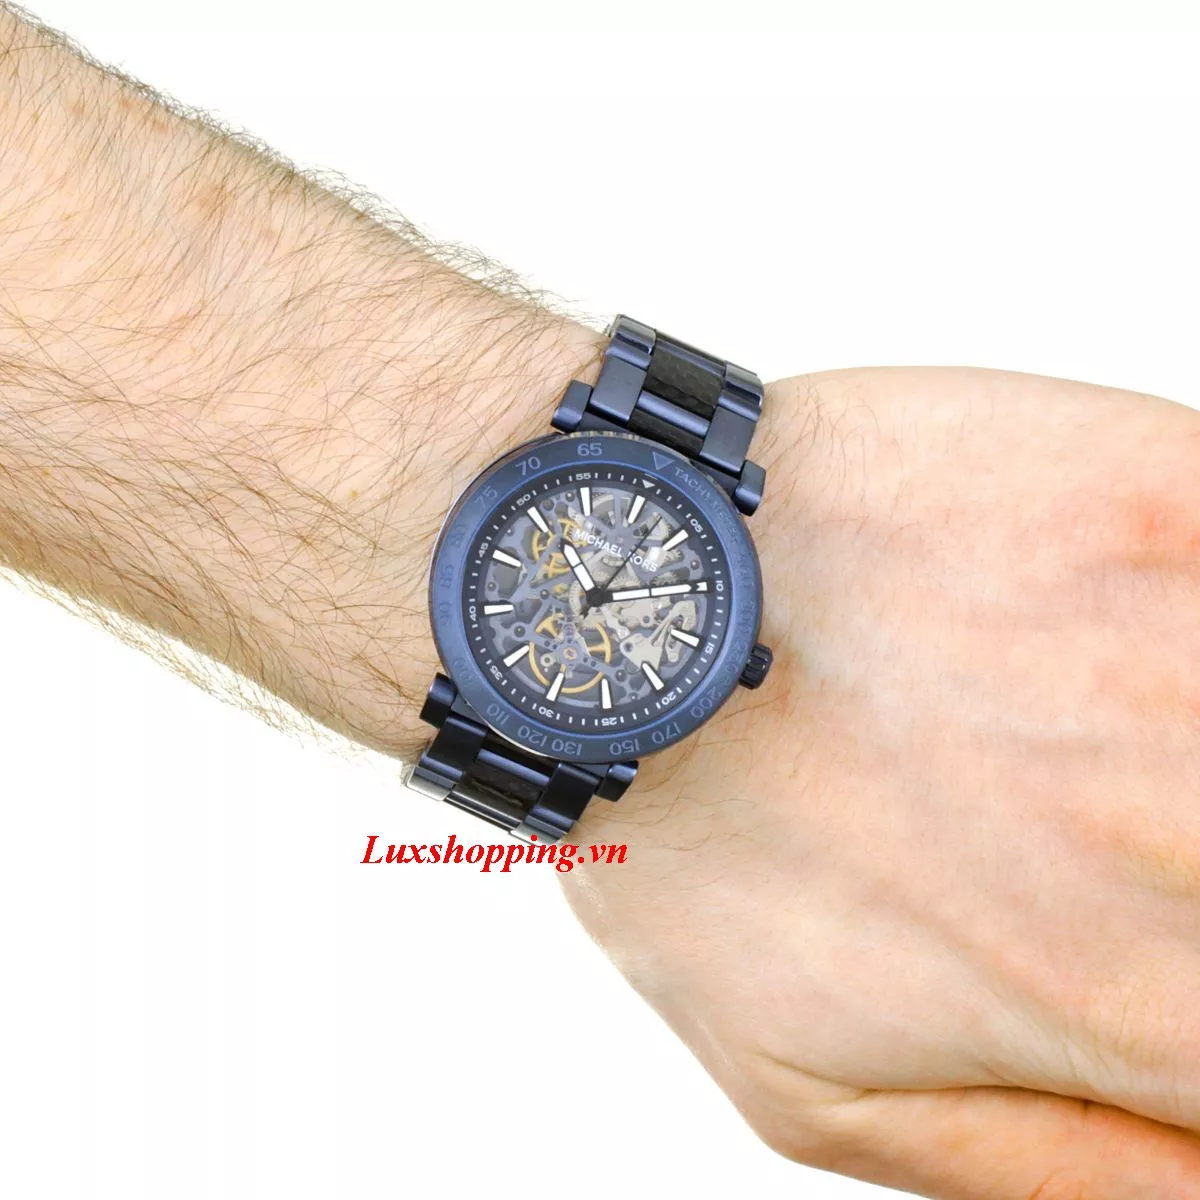 Michael Kors  Greer Navy-Tone Watch 43mm